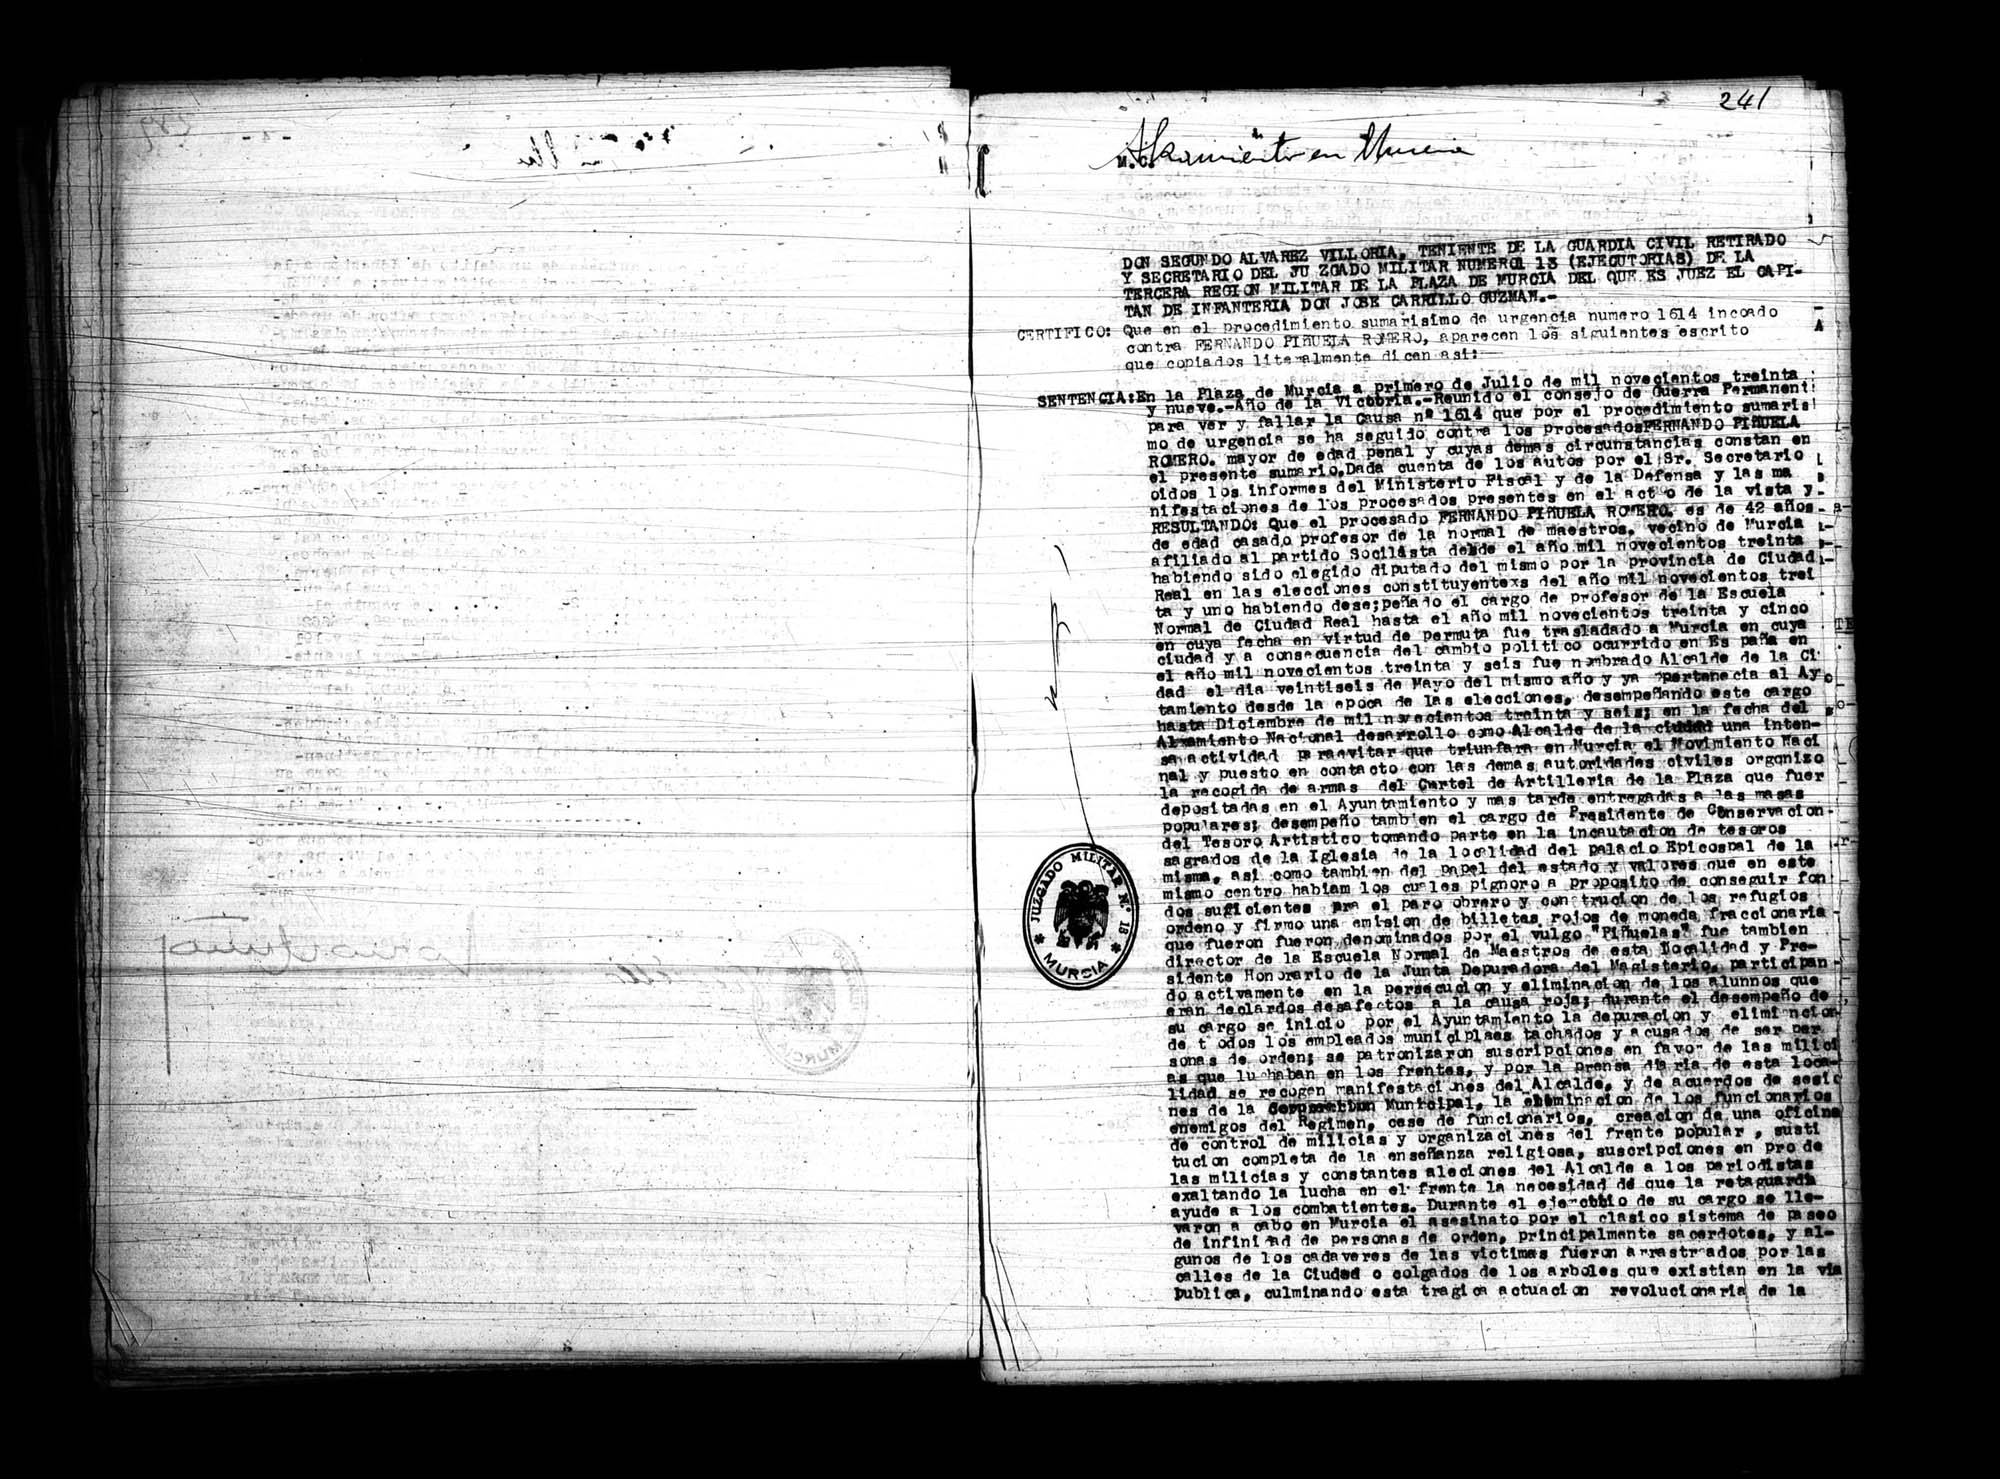 Certificado de la sentencia pronunciada contra Fernando Piñuela Romero, causa 1614, el 1 de julio de 1939 en Murcia.